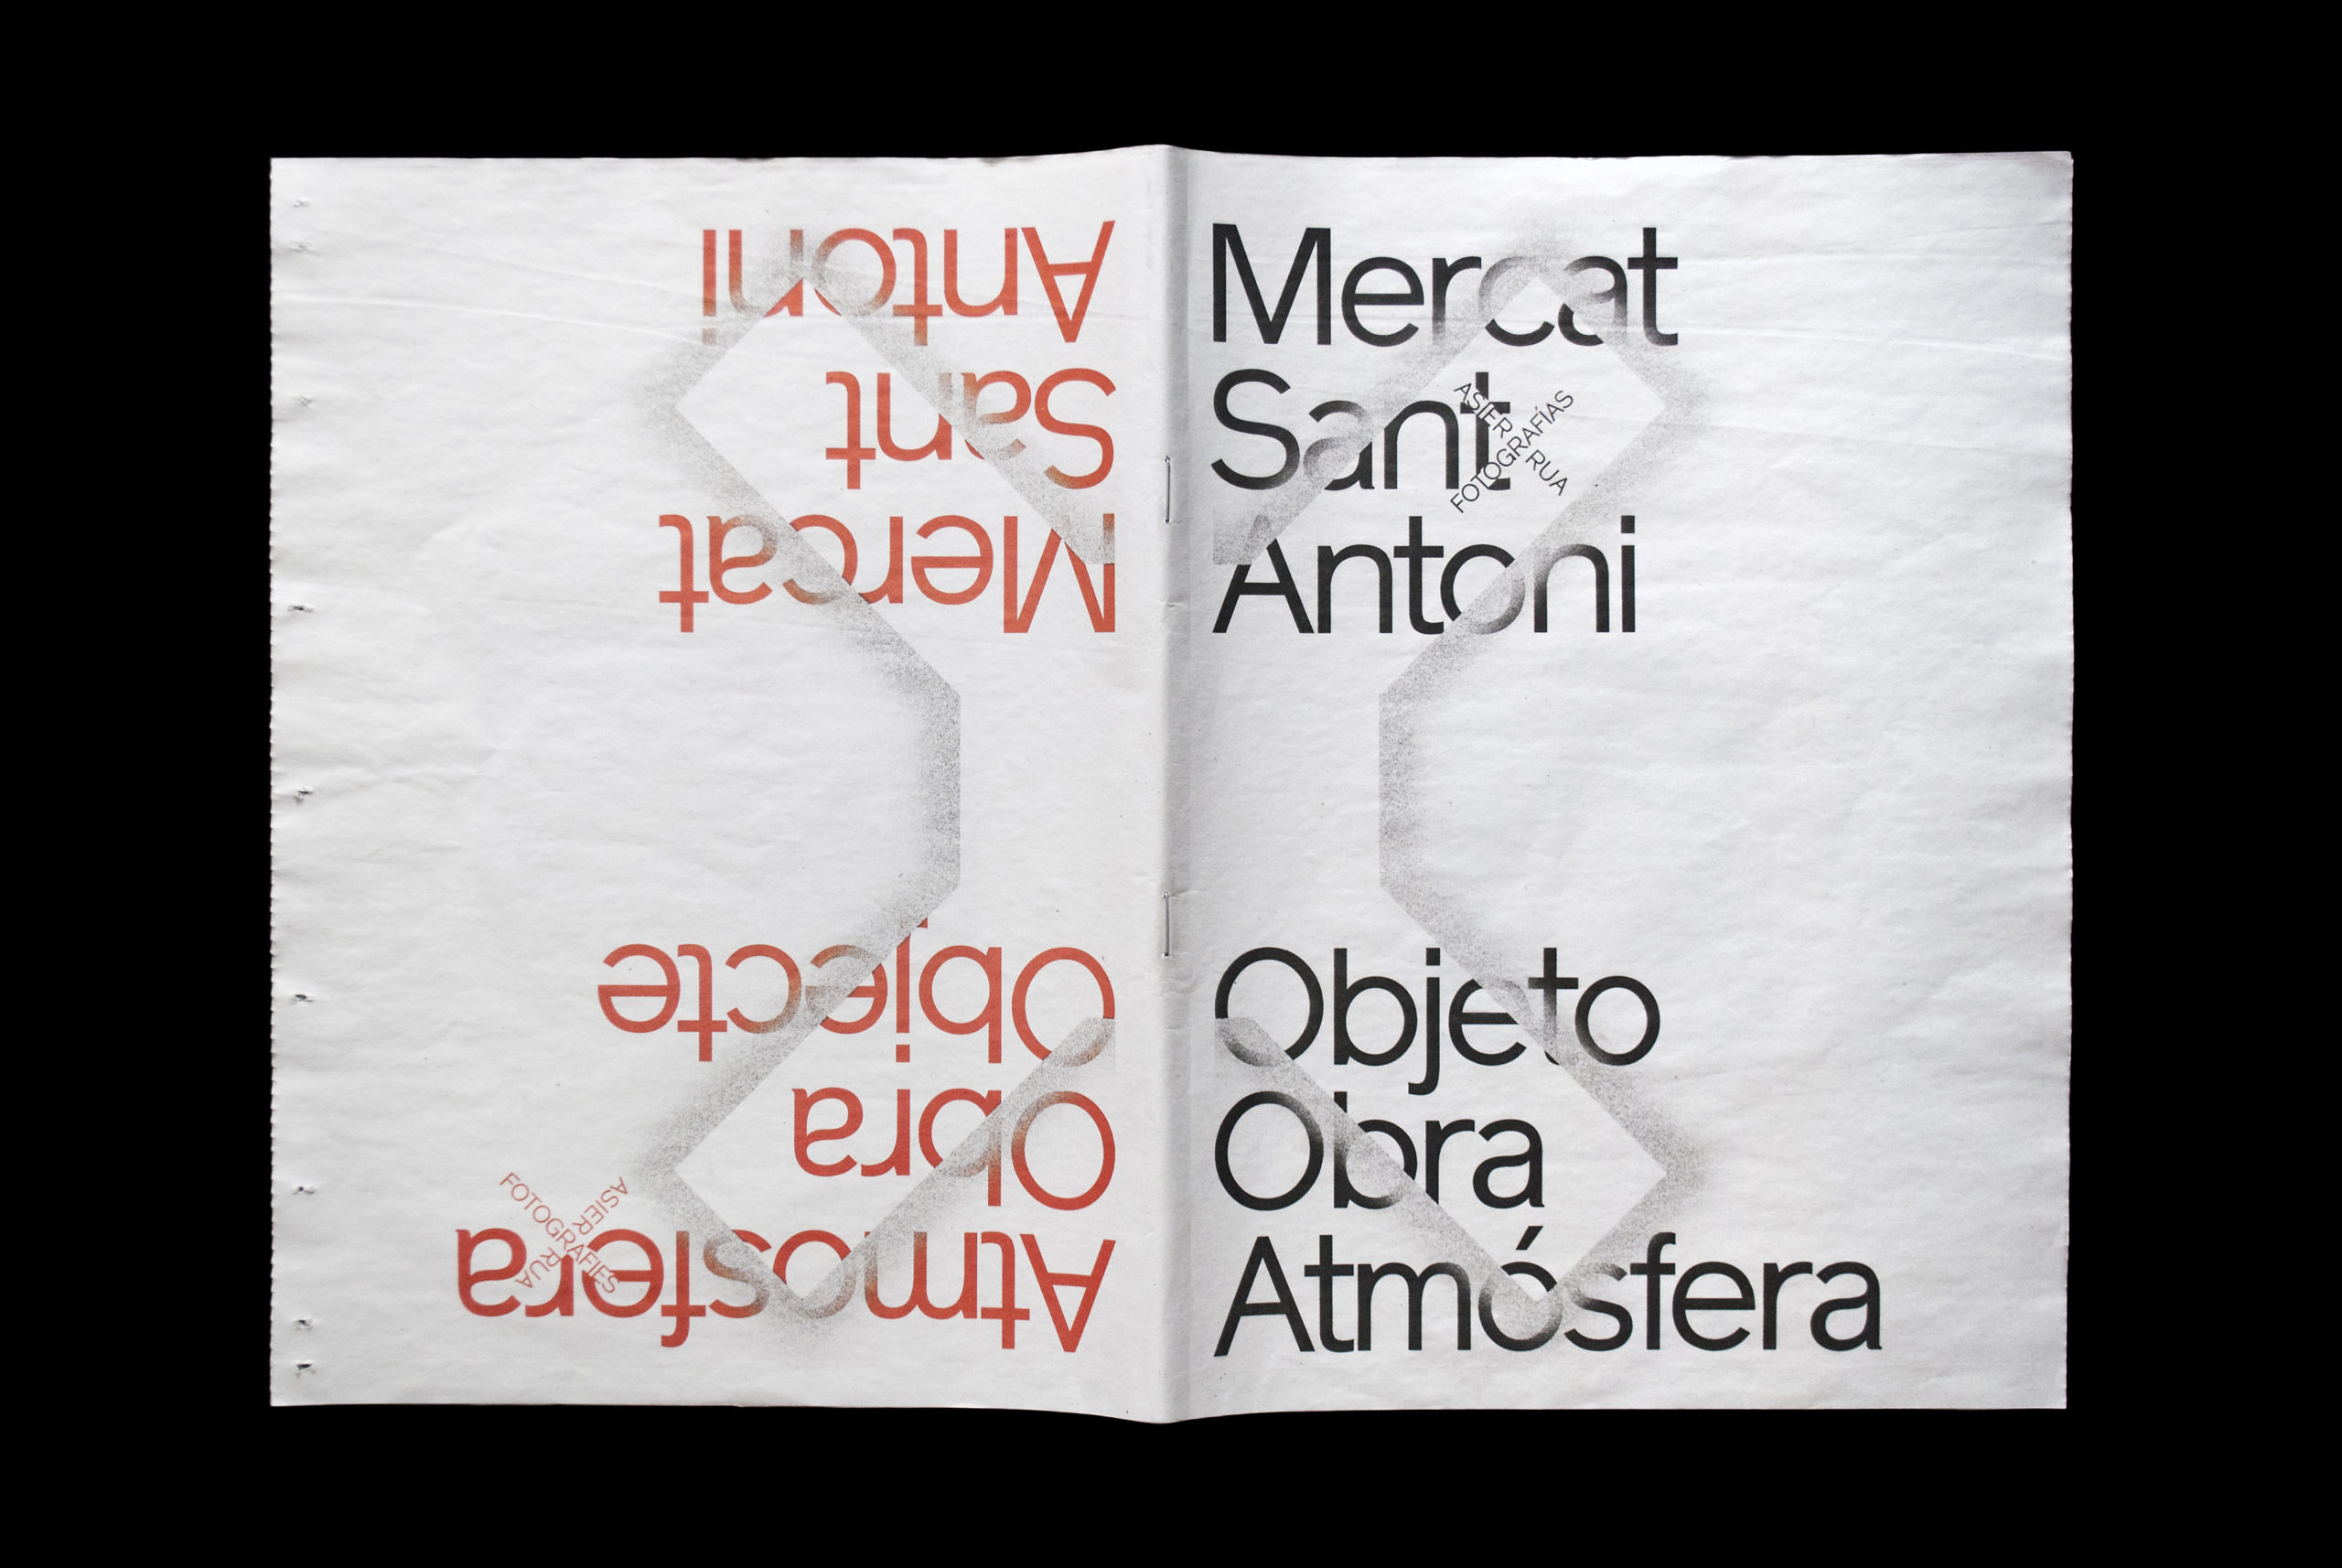 Mercat Sant Antoni Objeto/obra/atmósfera